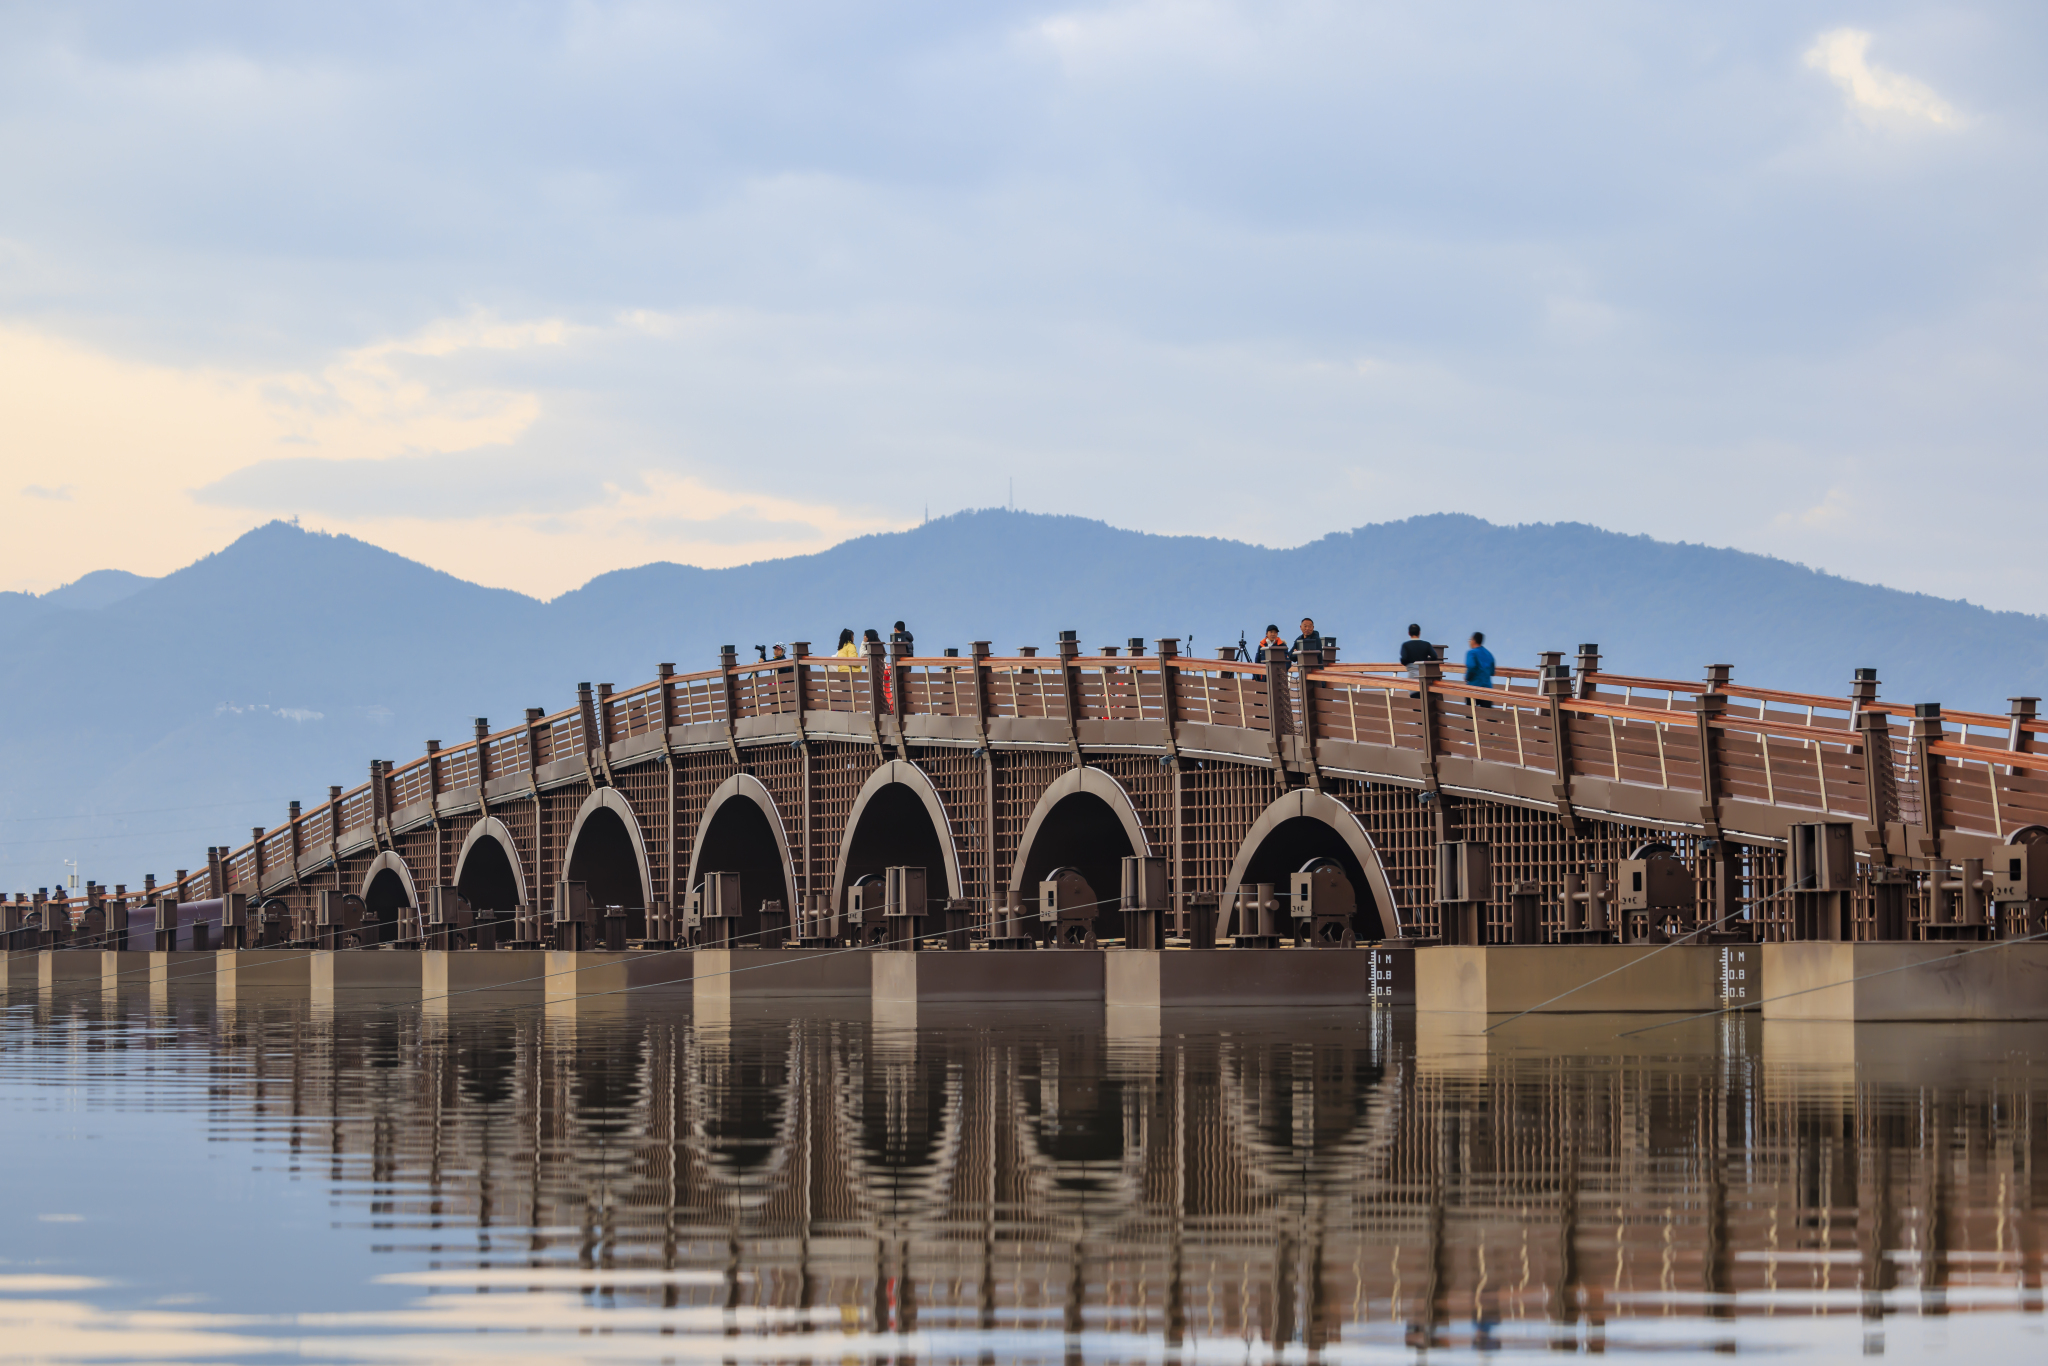 昆明：七孔浮桥亮相 市民可步行横穿滇池草海